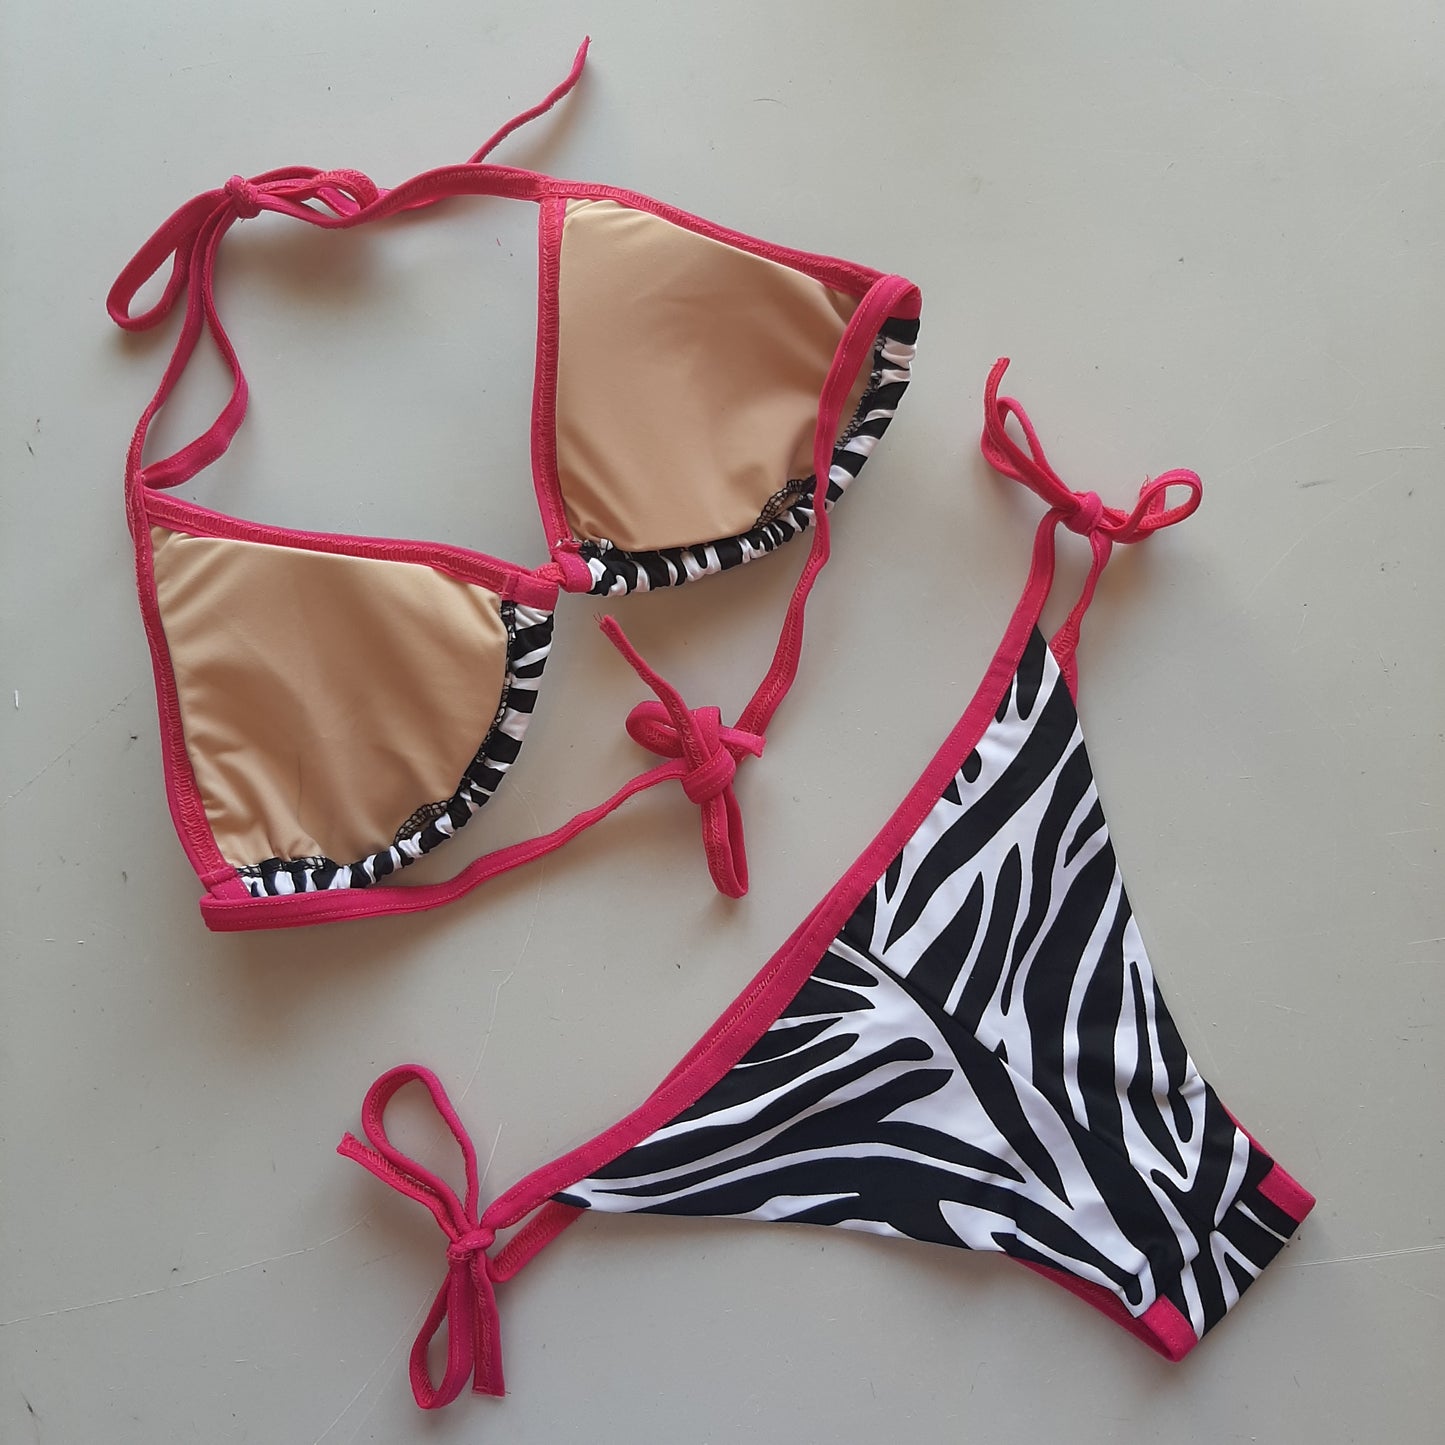 Completo bikini laccetti zebra / fucsia - Flamingo pole wear